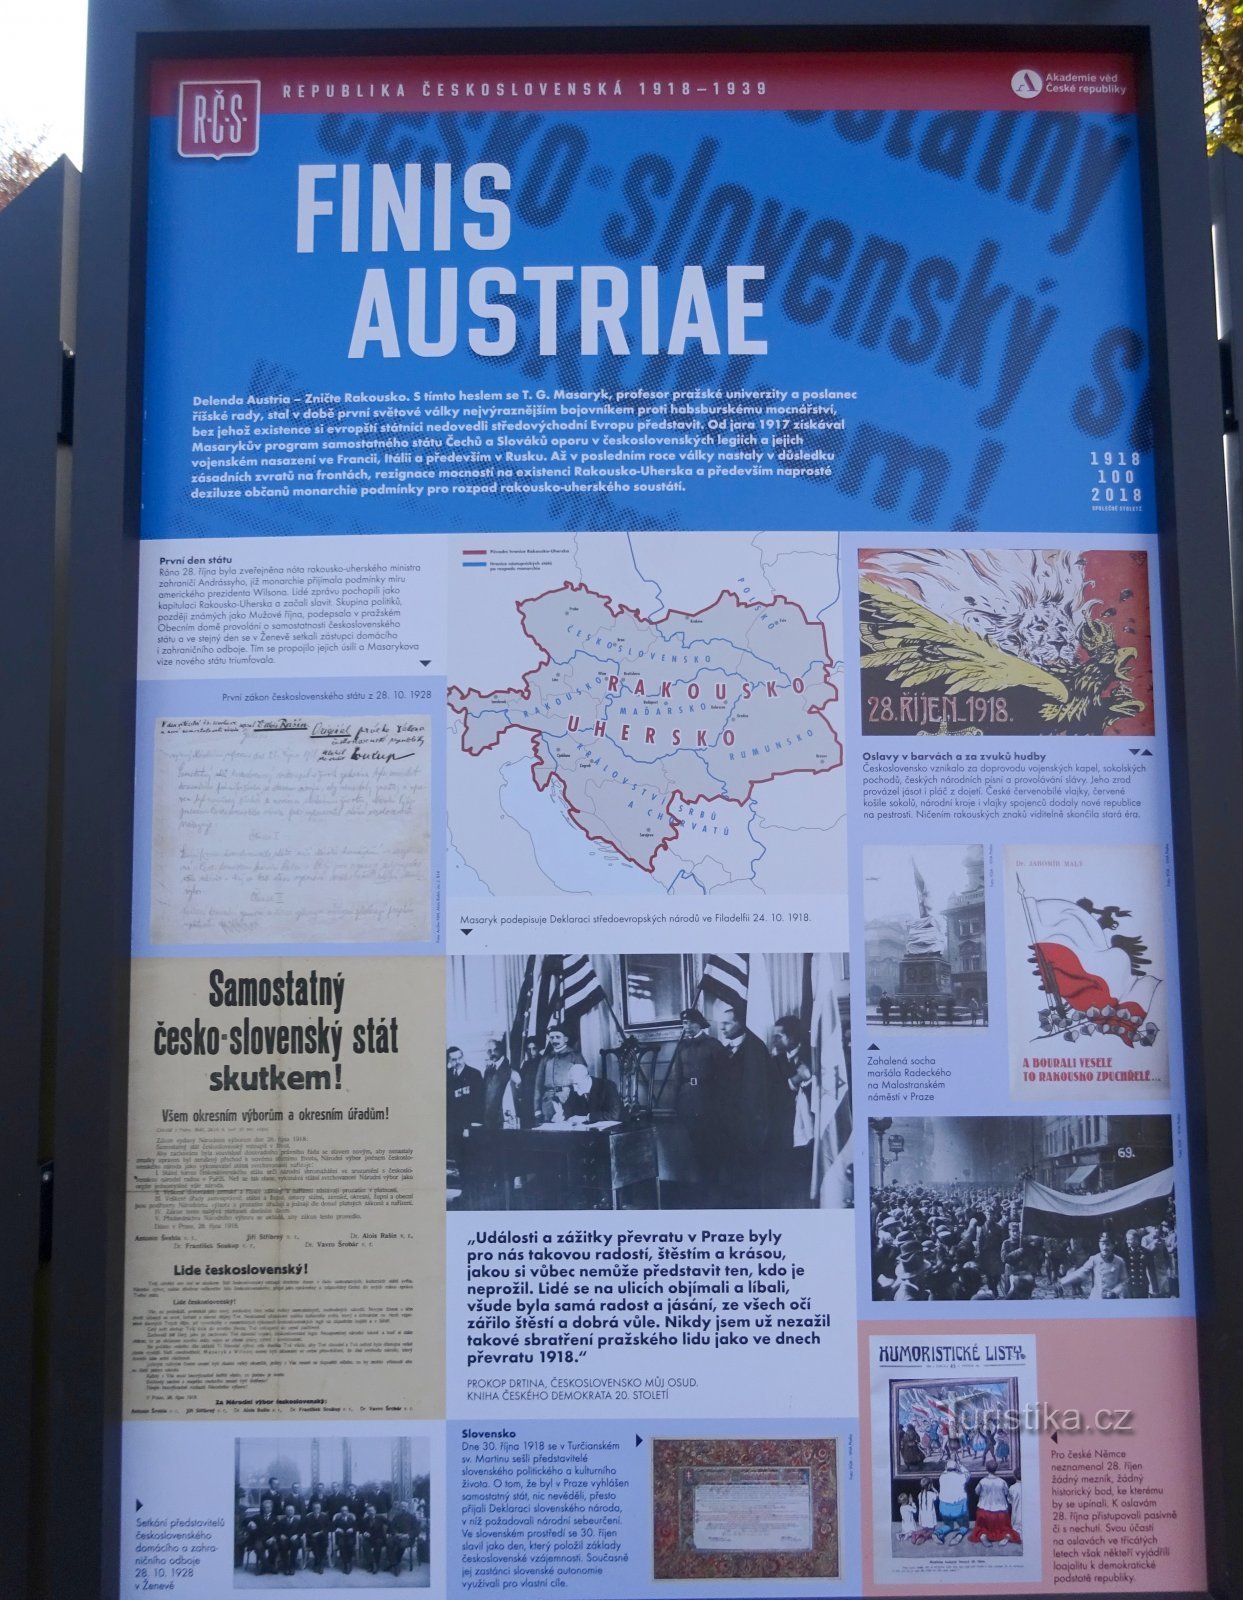 desintegratie van Oostenrijk-Hongarije